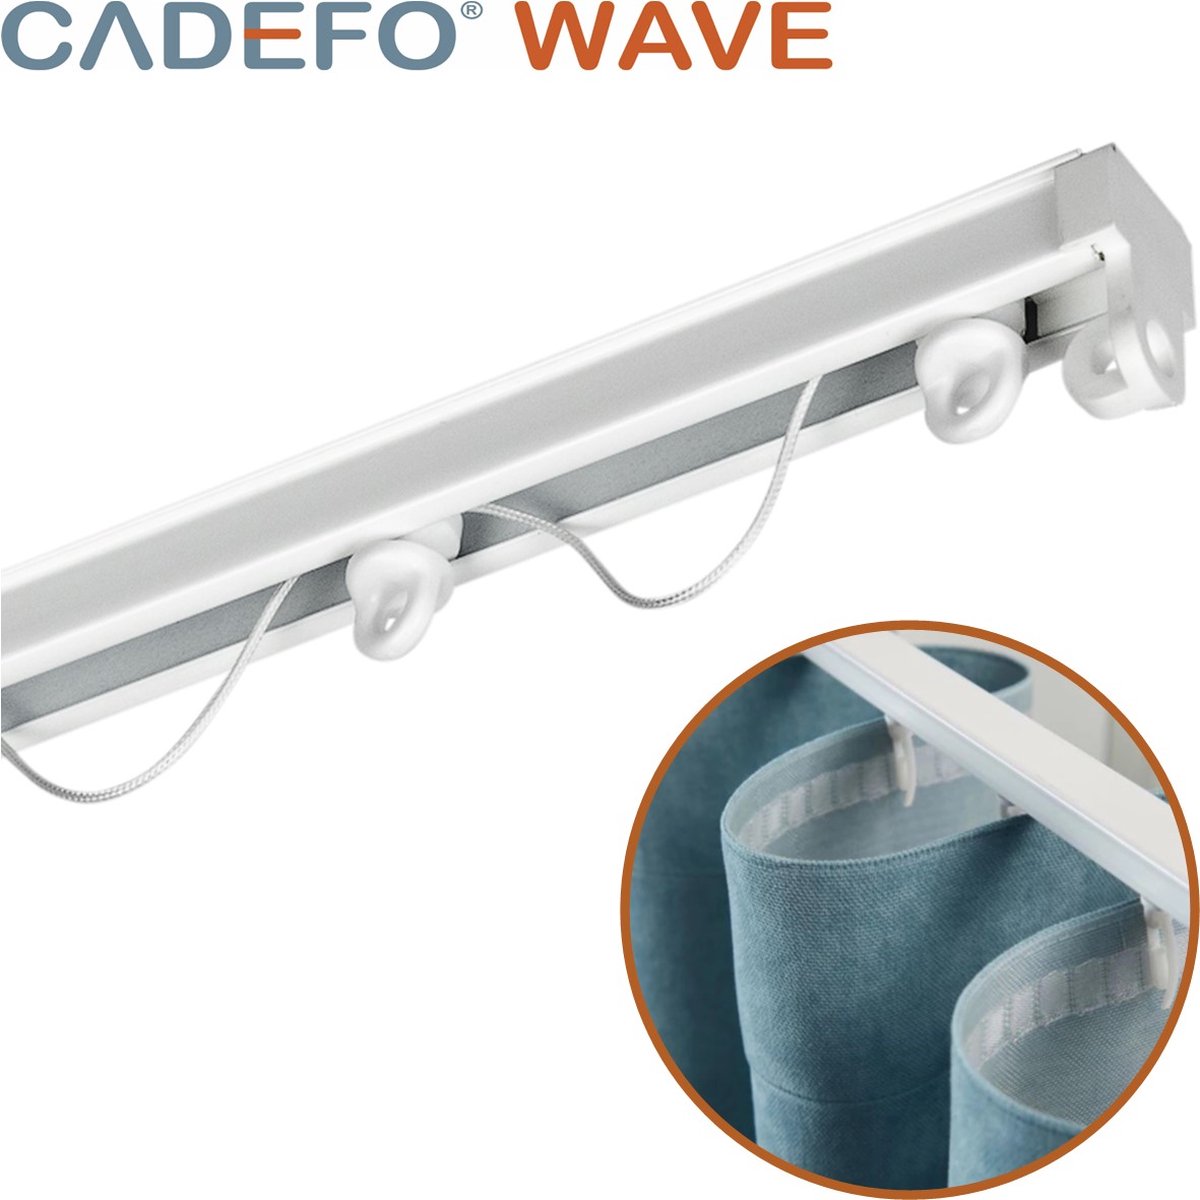 CADEFO WAVE (151 - 200 cm) Gordijnrails - Compleet op maat! - UIT 1 STUK - Leverbaar tot 6 meter - Plafondbevestiging - Lengte 174 cm